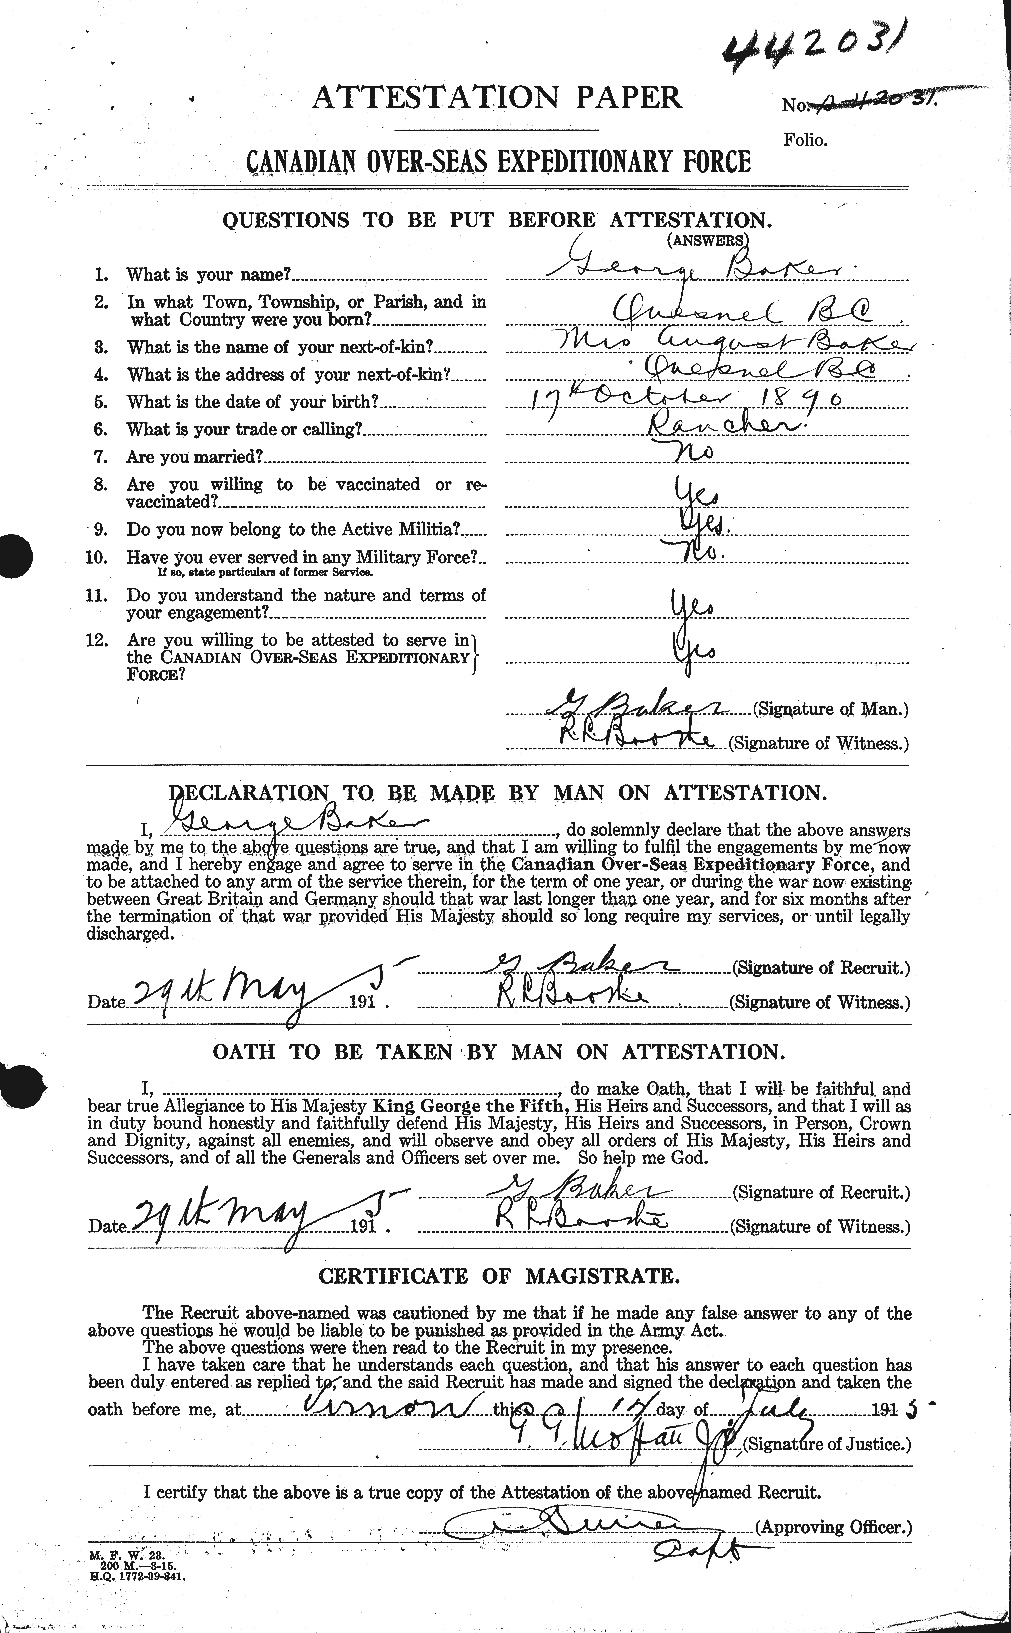 Dossiers du Personnel de la Première Guerre mondiale - CEC 216258a